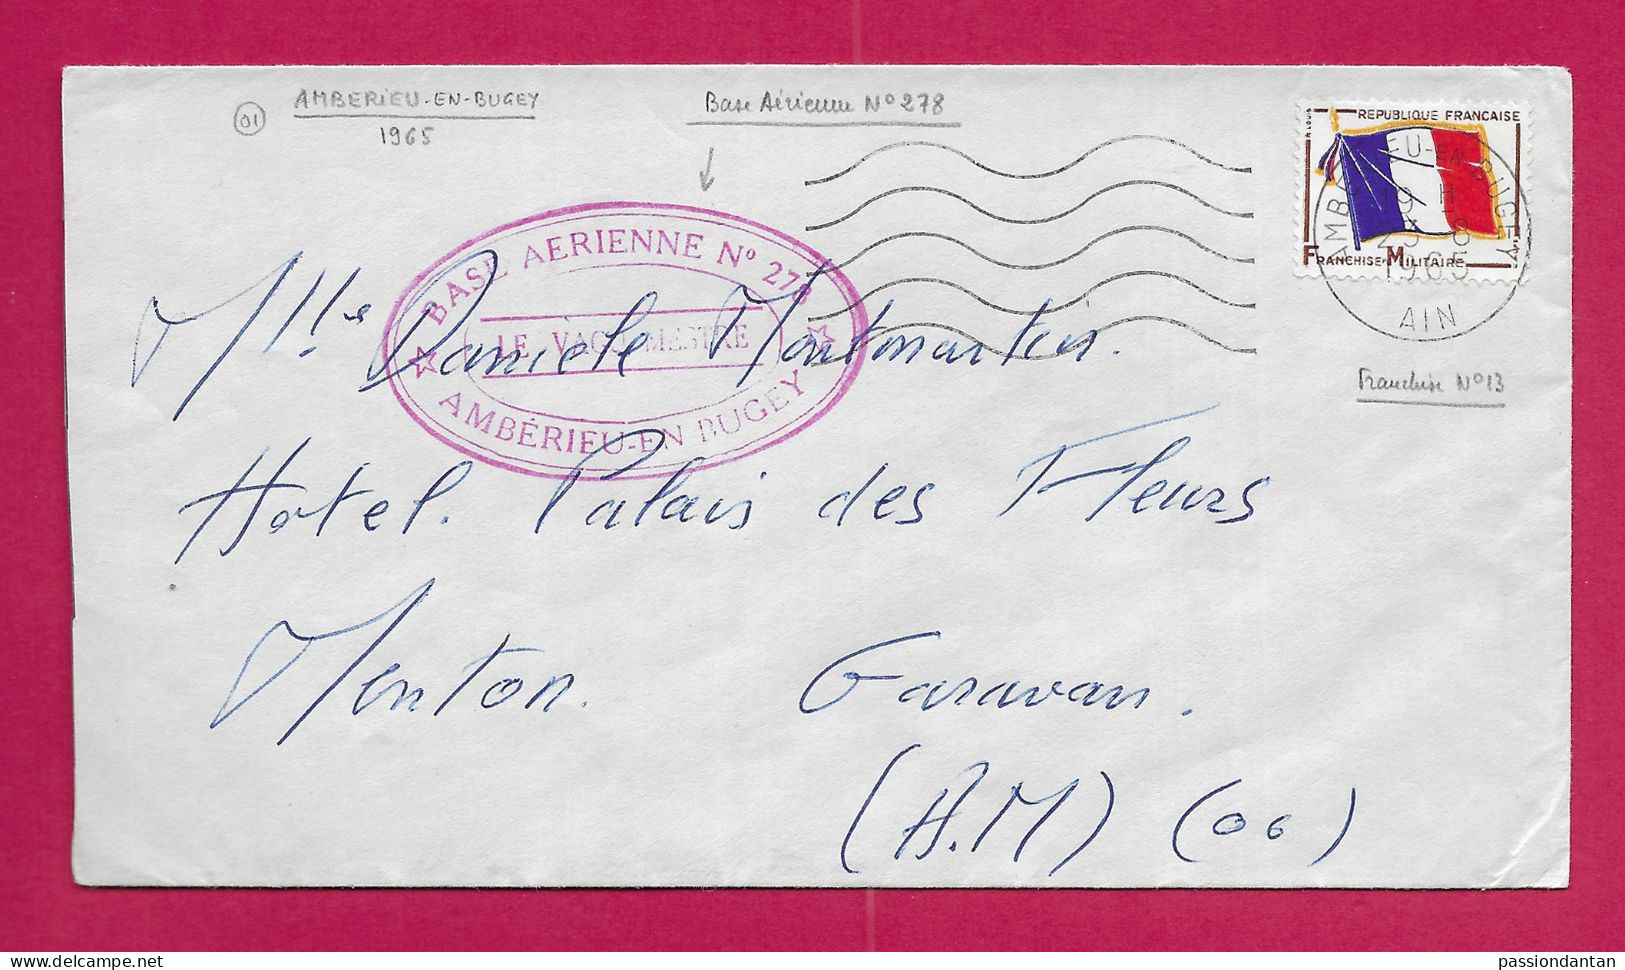 Enveloppe Datée De 1965 - Timbre Humide Base Aérienne N° 278 à Ambérieu En Bugey Dans L'Ain - Militärische Luftpost